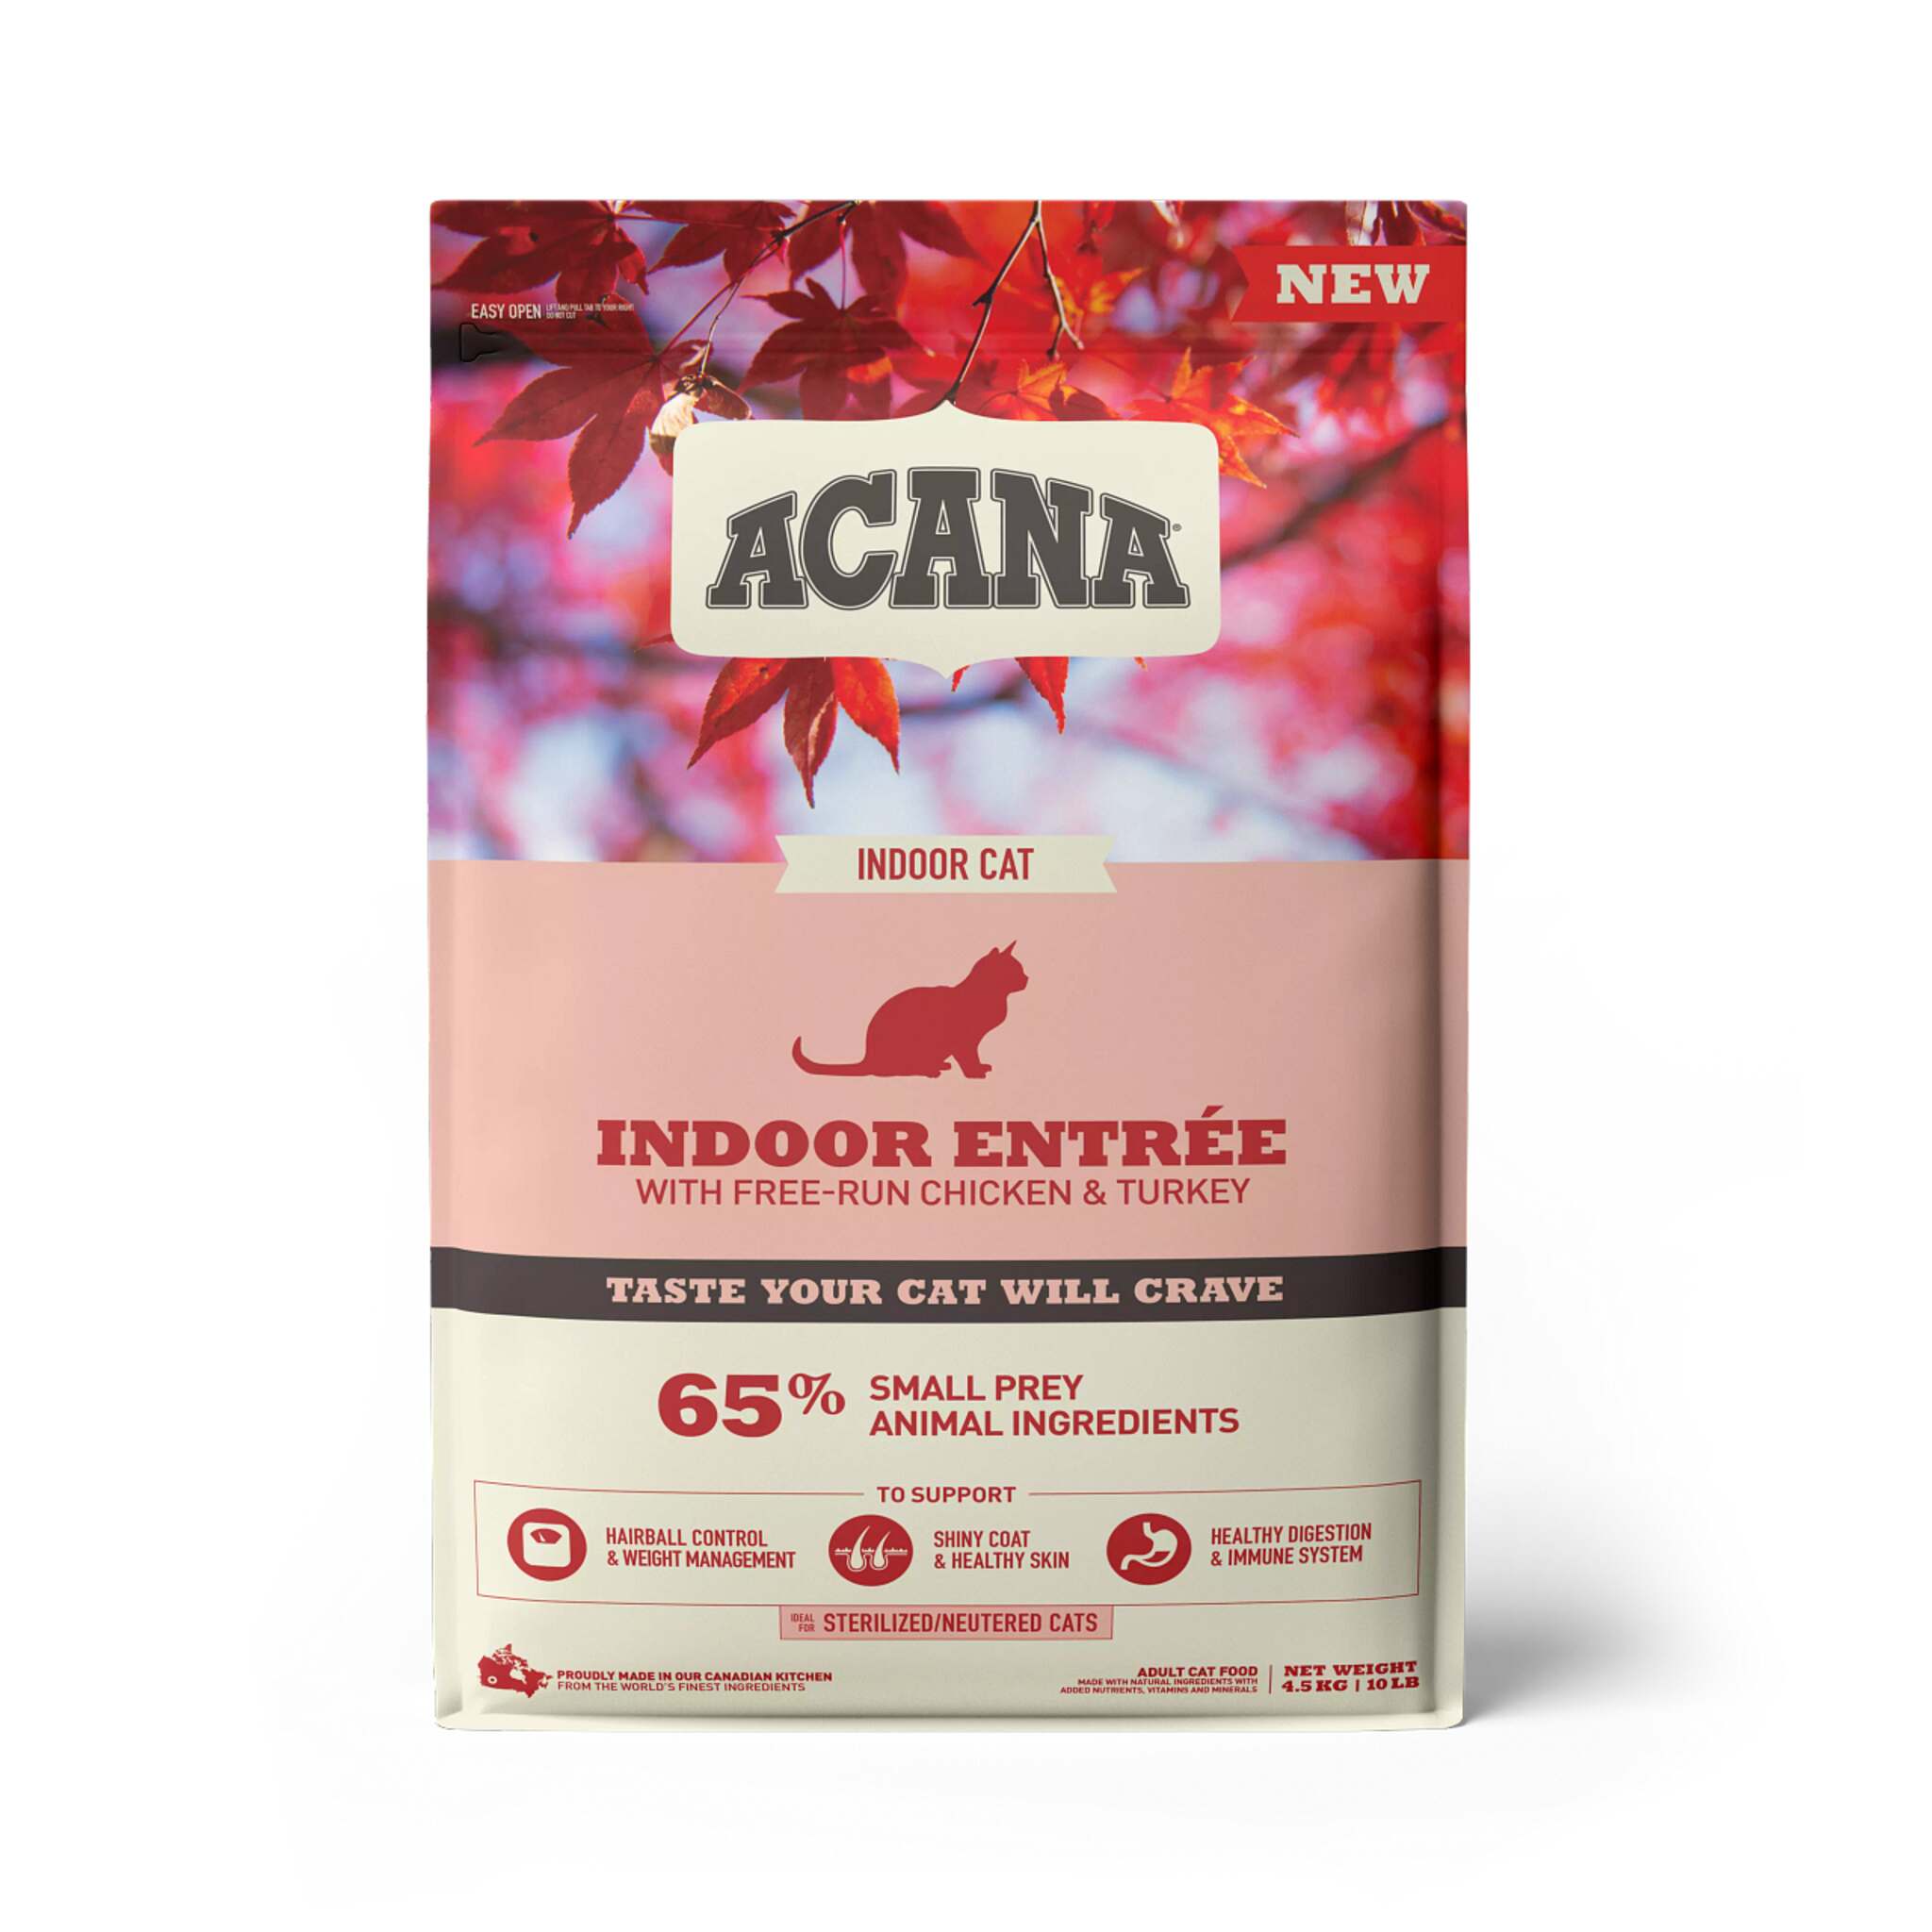 A bag of Acana cat food, Indoor Entree recipe, 10 lb. 